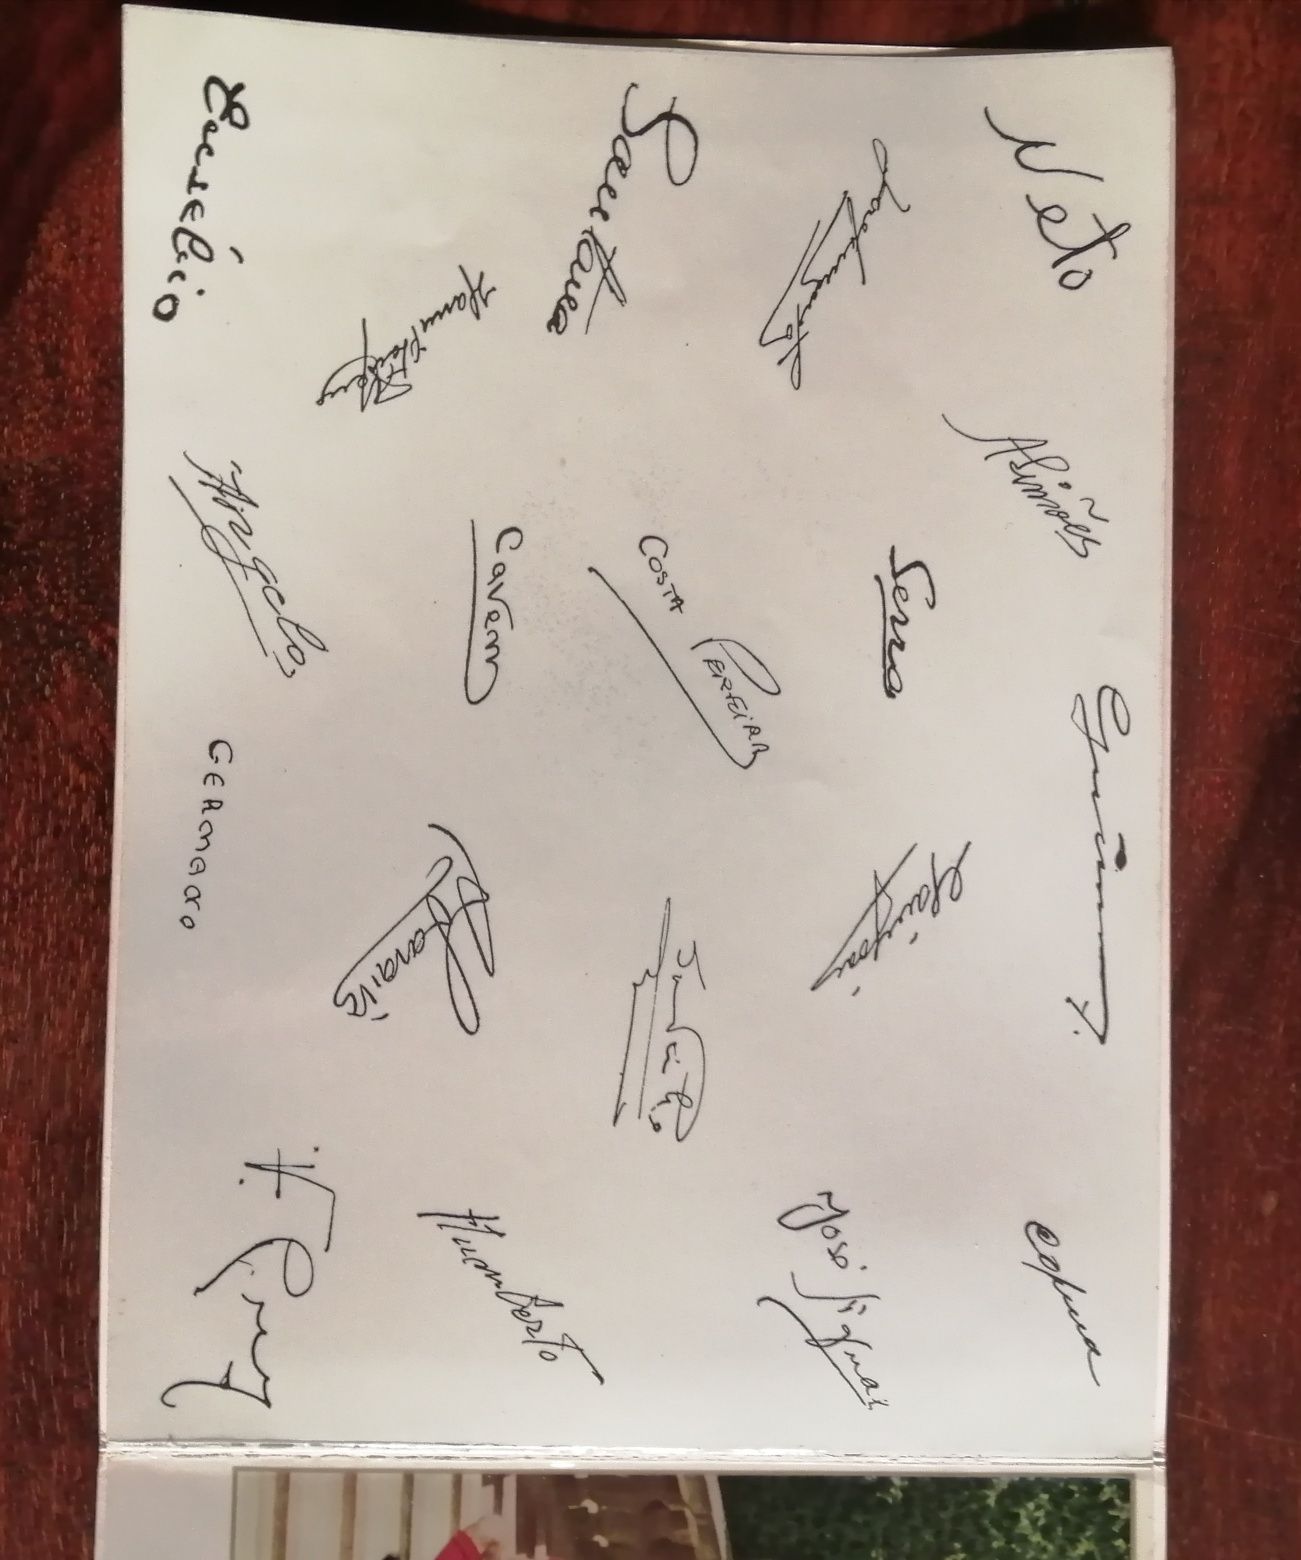 Selos e postal do Benfica com as assinaturas de todos os jogadores